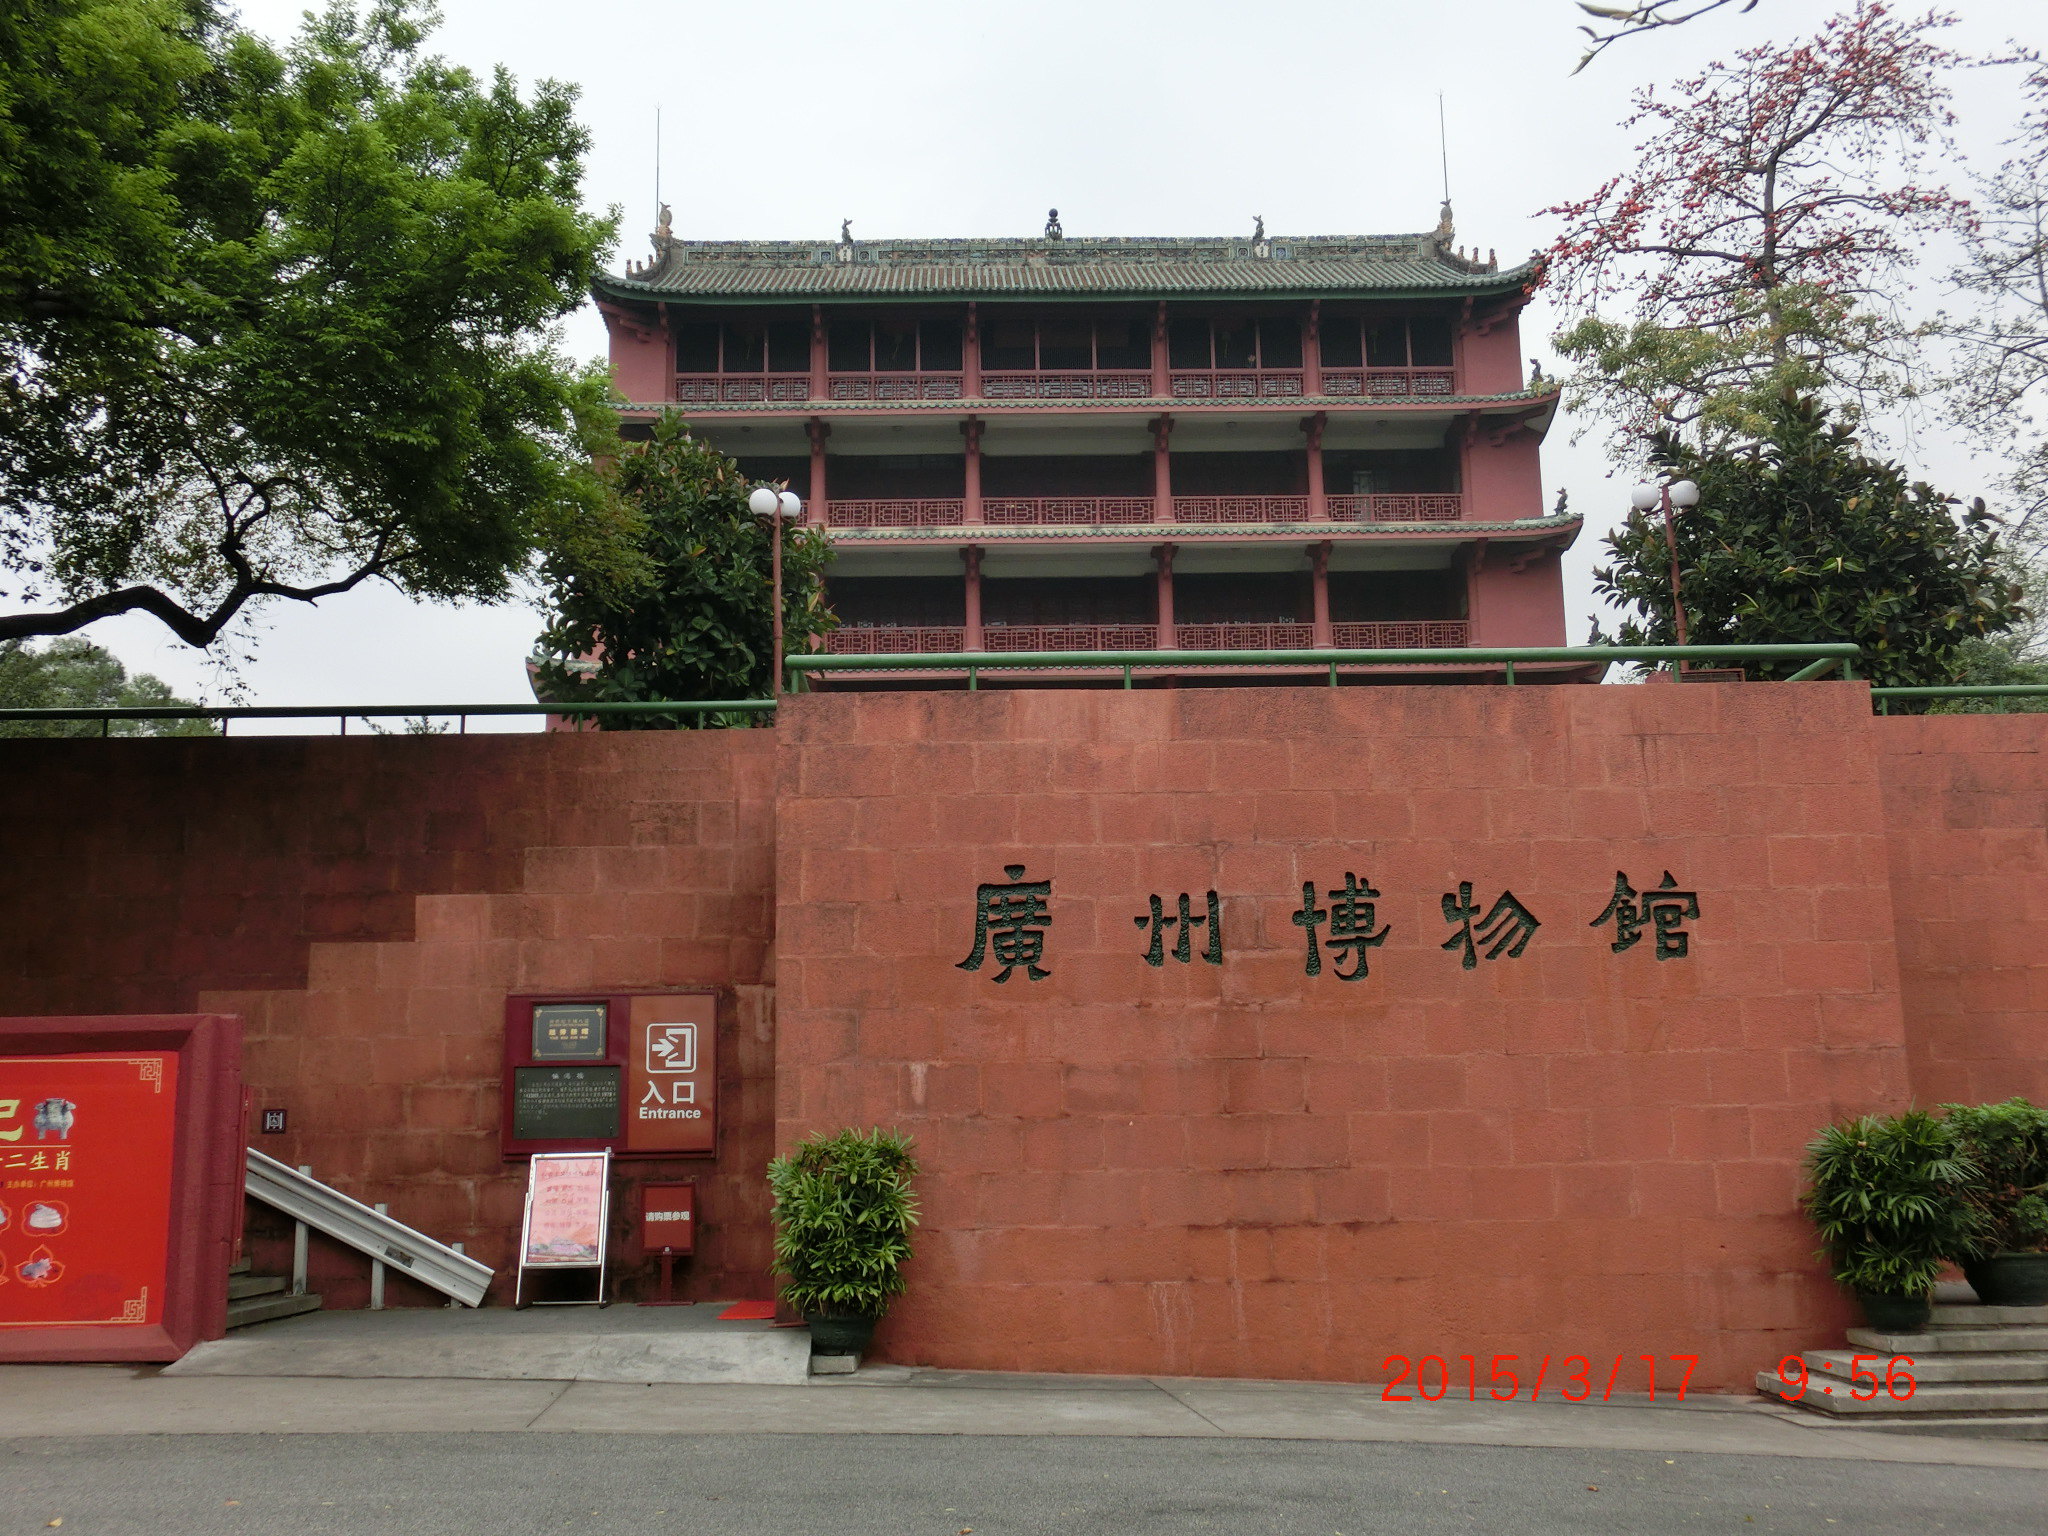 【携程攻略】广东广州博物馆景点,广州博物馆就是镇海楼,它在越秀公园